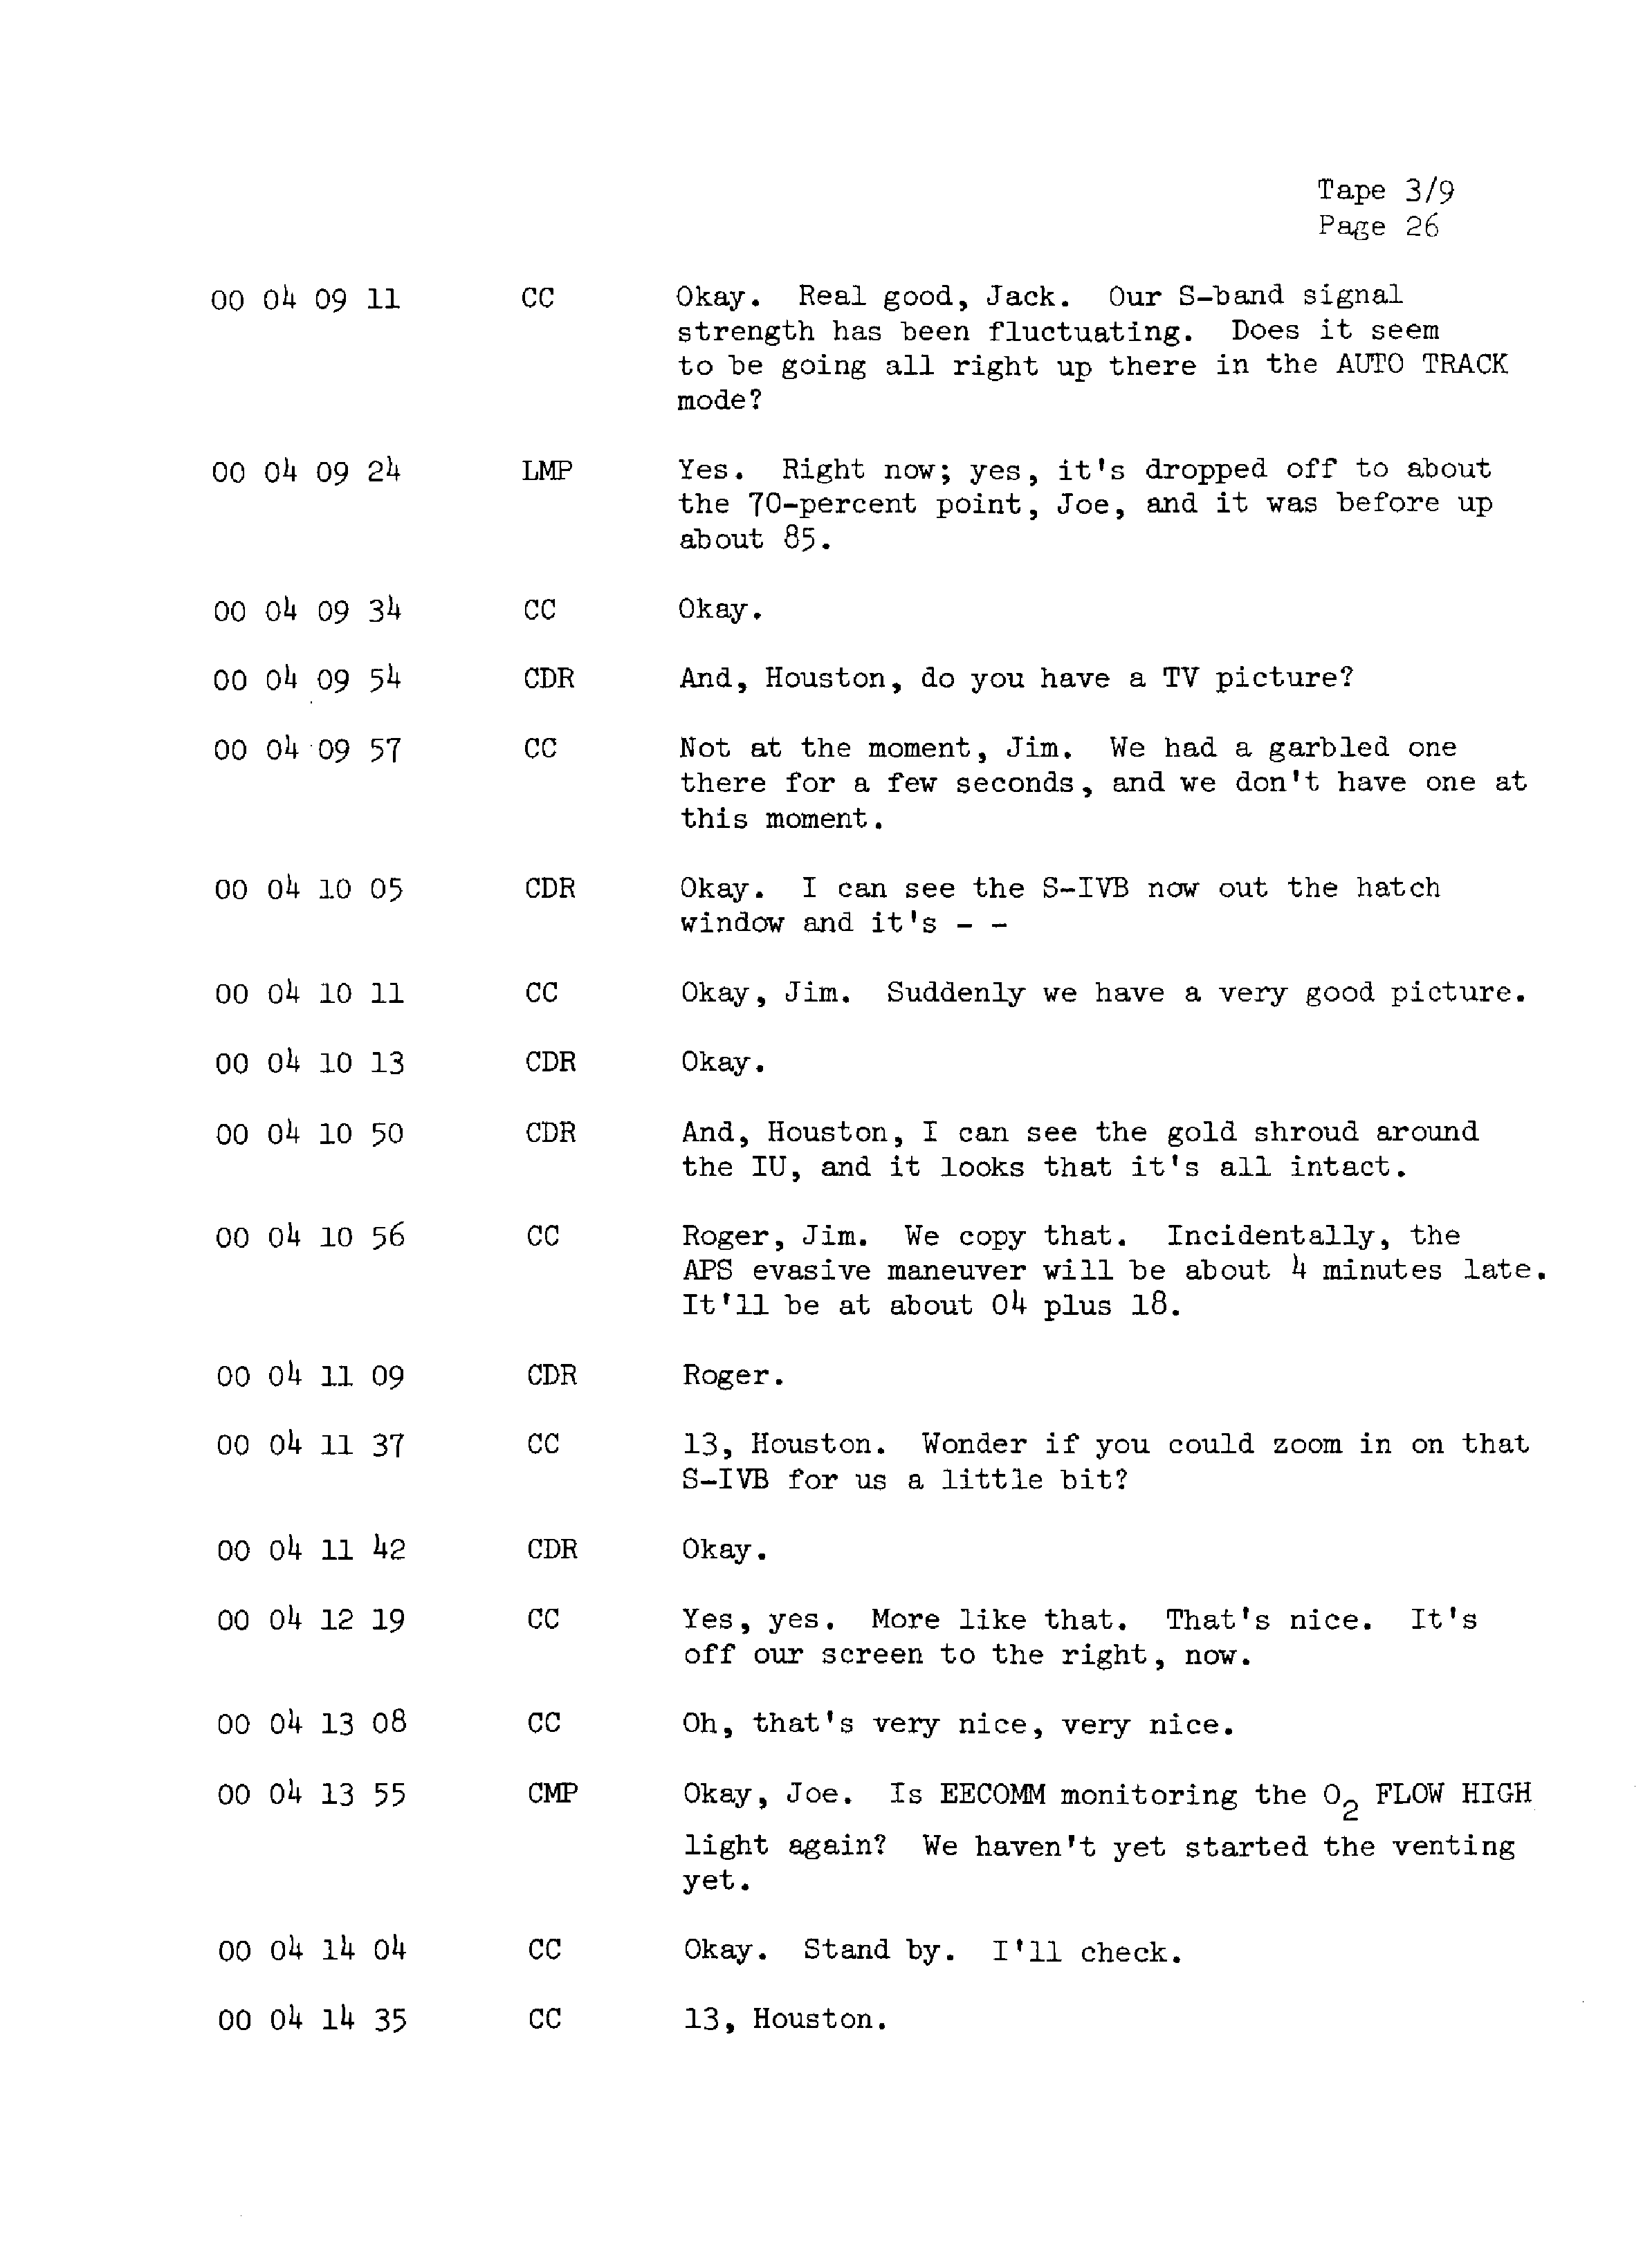 Page 33 of Apollo 13’s original transcript